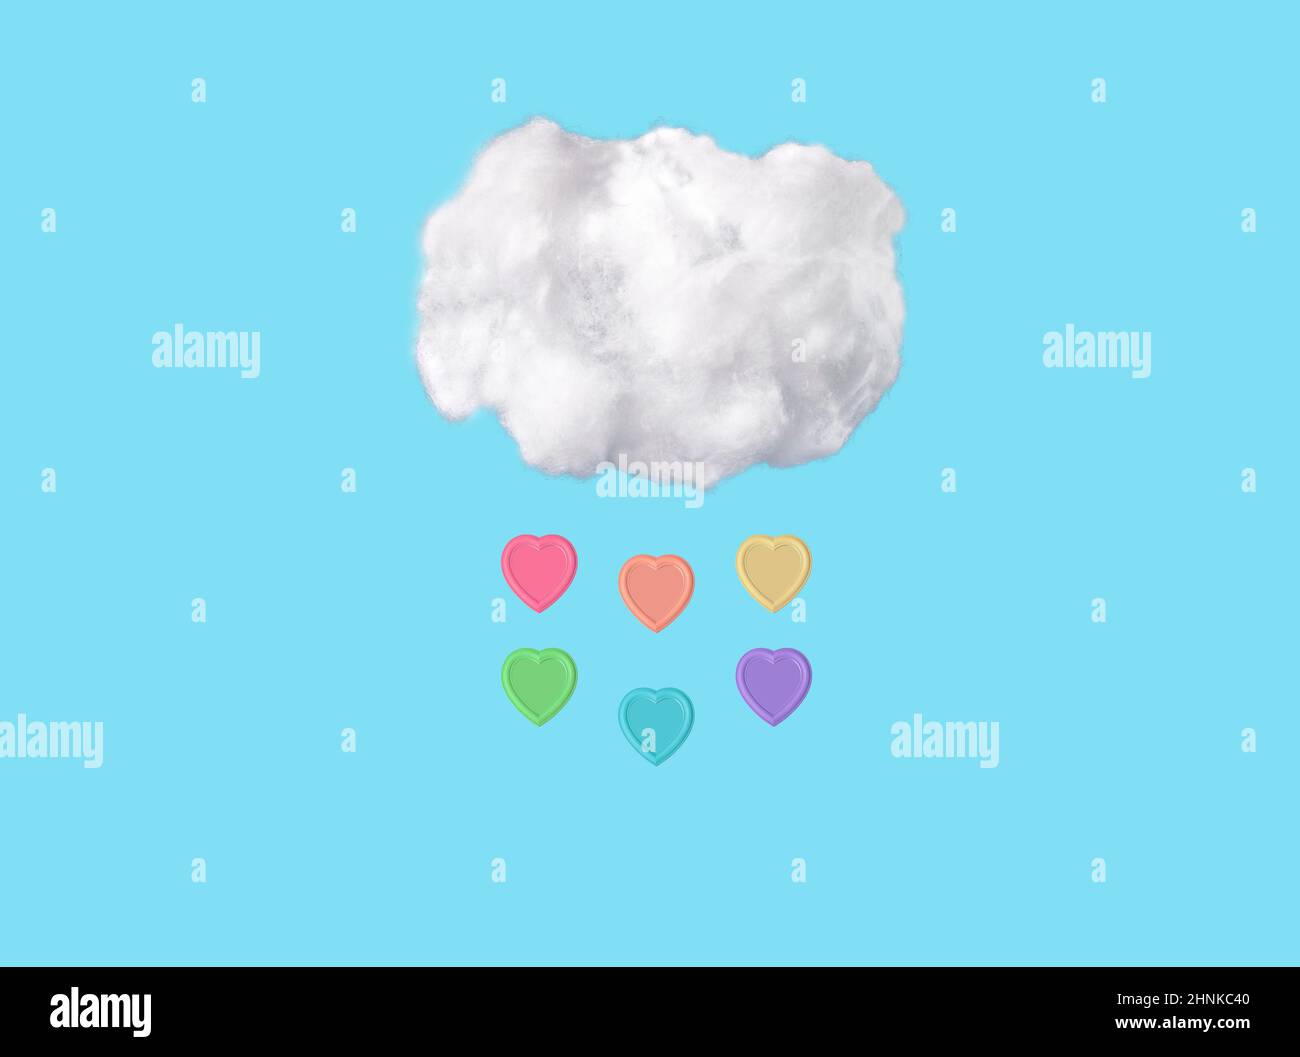 Nuages de coton et gouttes de pluie à coeur coloré sur fond bleu ciel dans un style surréaliste drôle. Météo printanière. Photo de haute qualité. Concept LGBT Banque D'Images